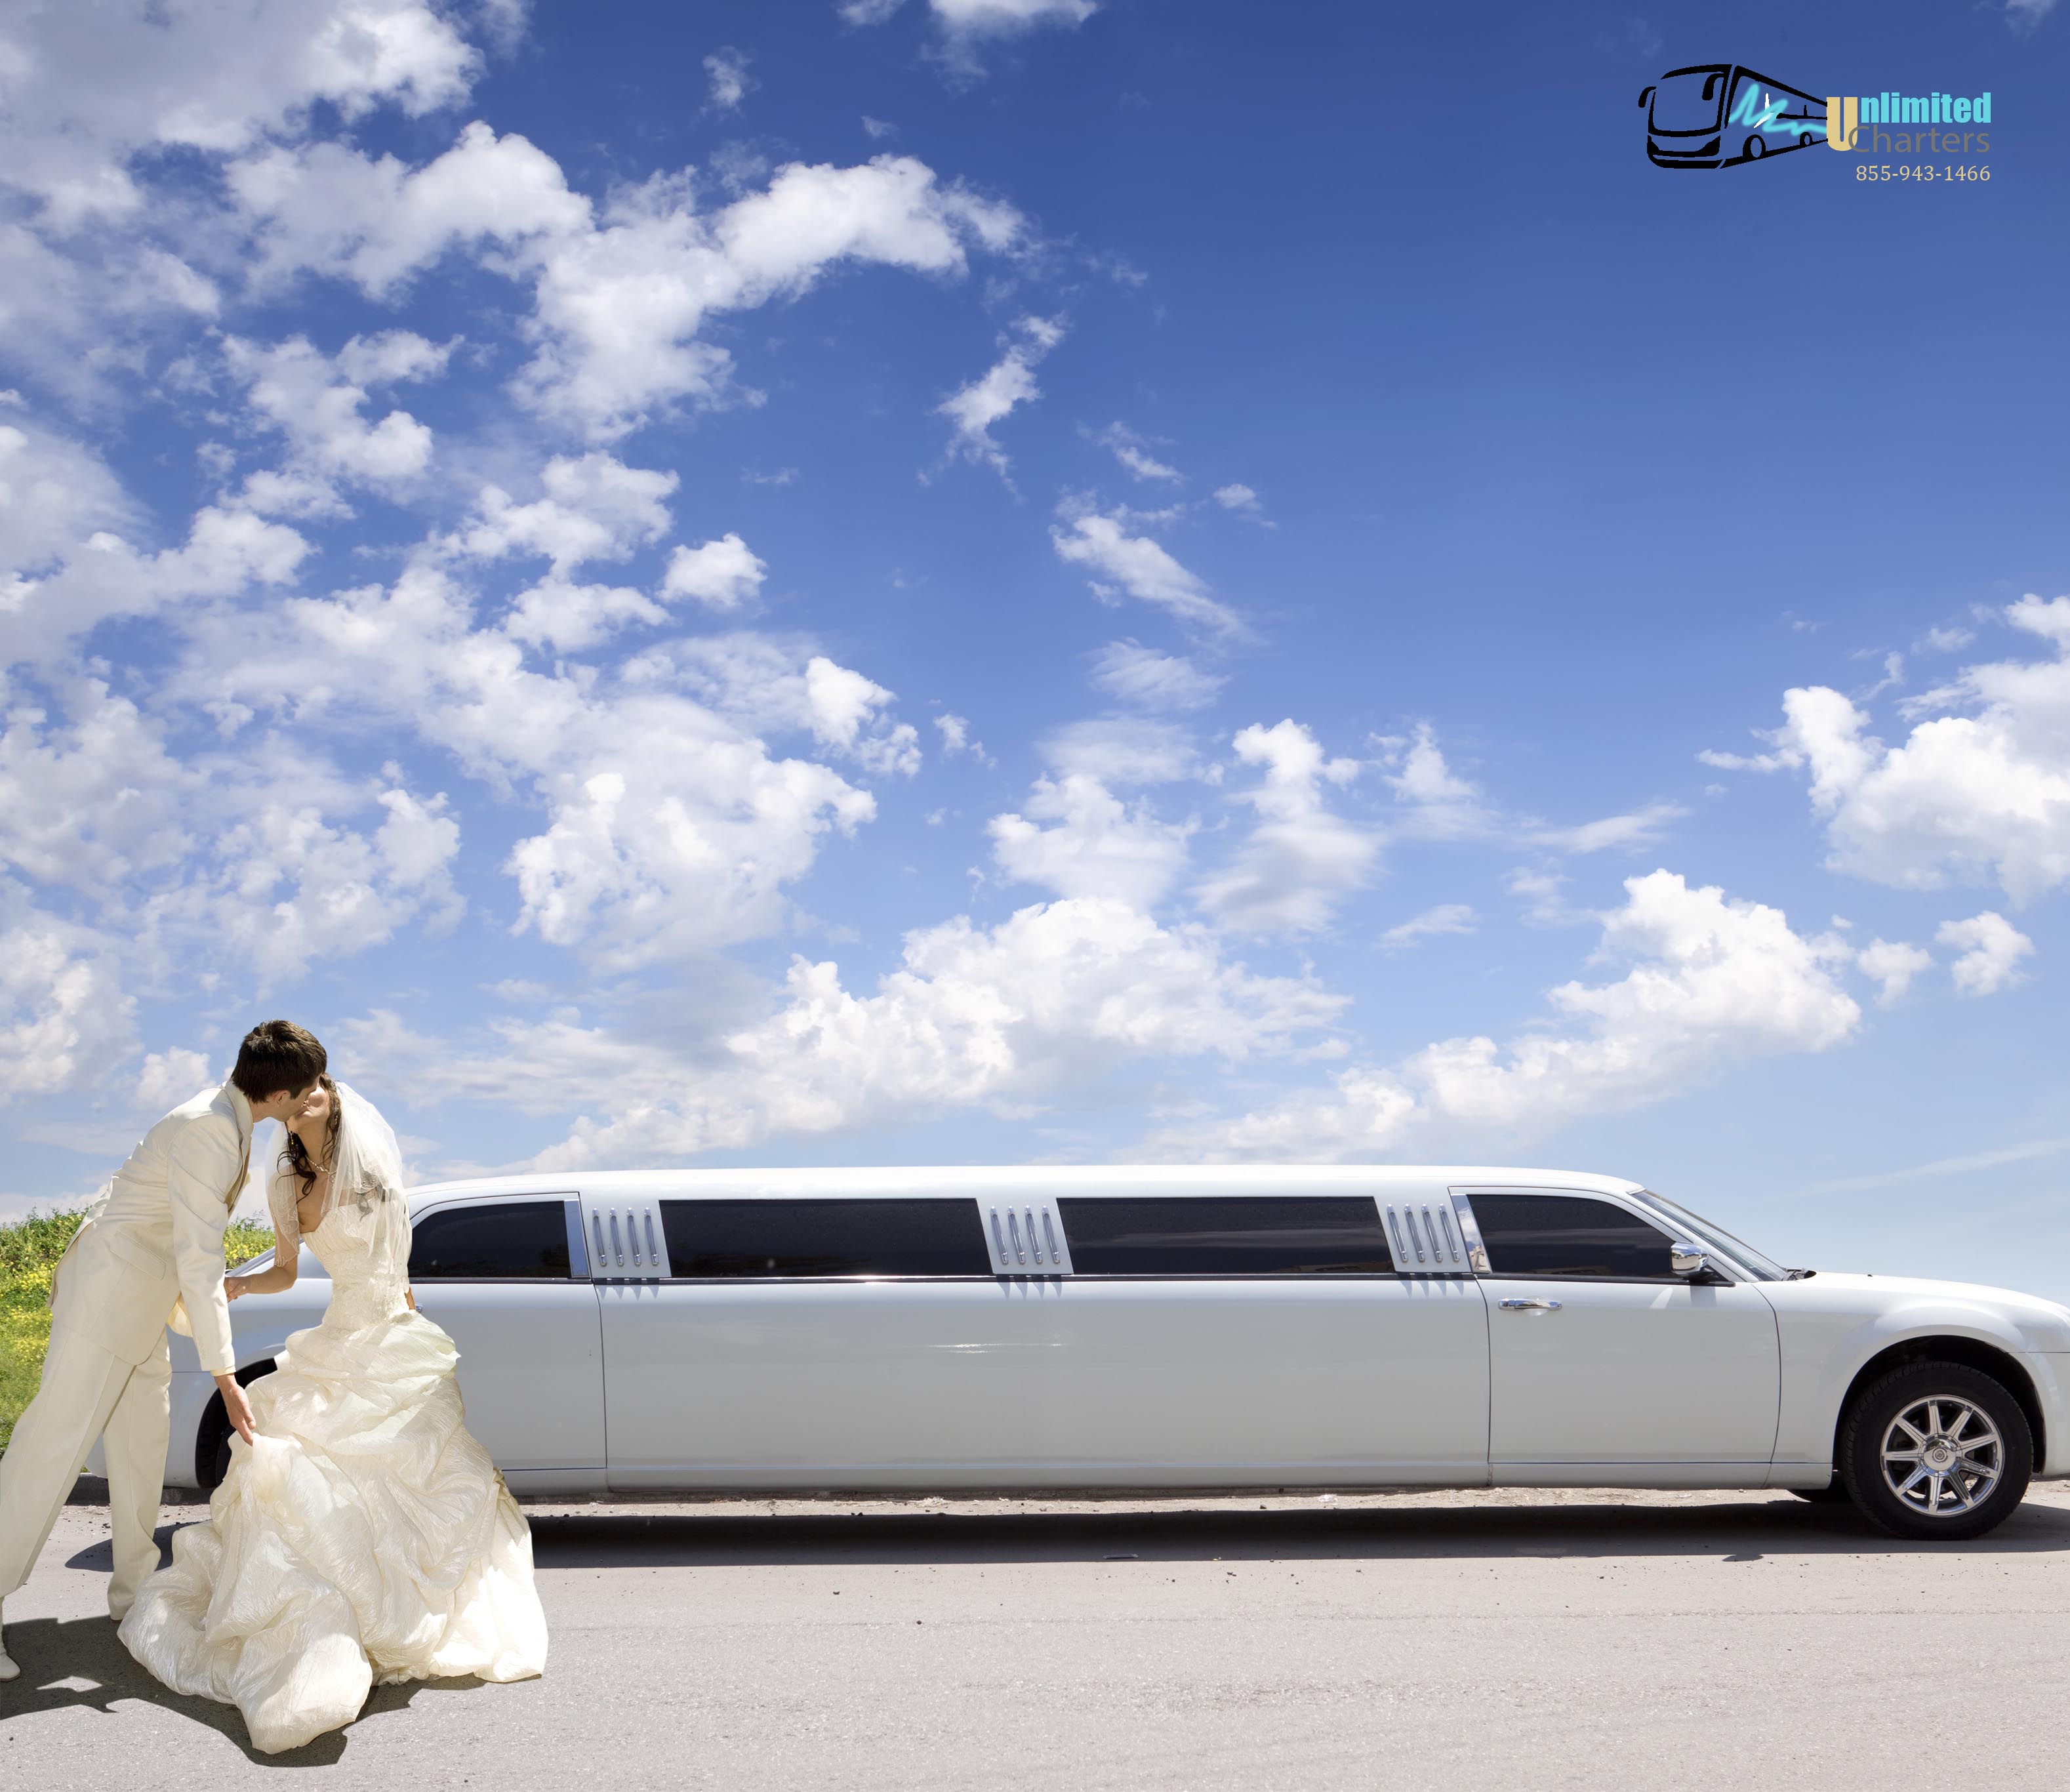 Wedding Transportation Crowley,MD